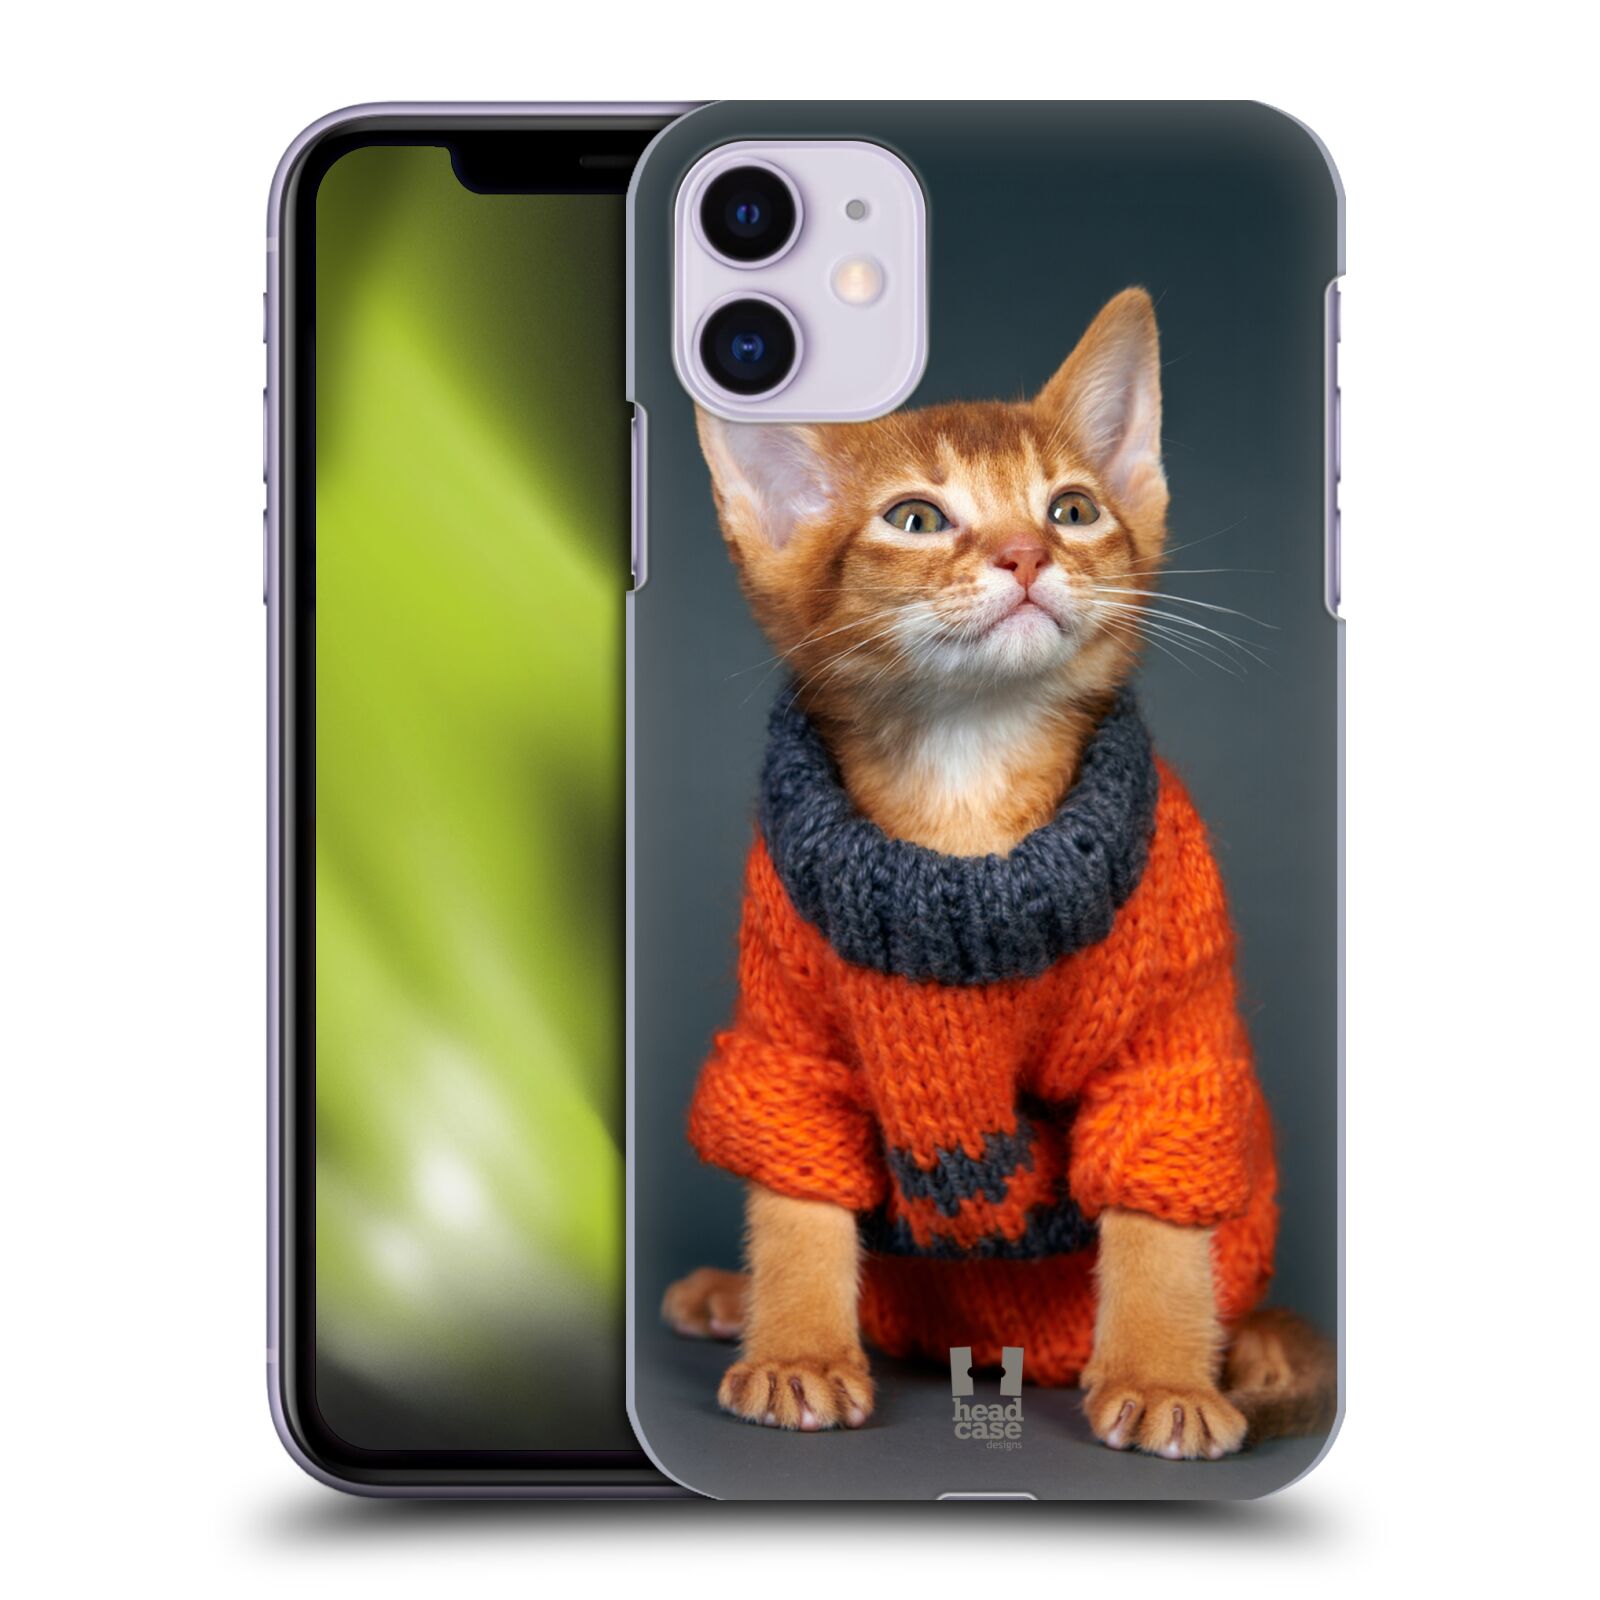 Zadní obal pro mobil Apple Iphone 11 - HEAD CASE - Srandovní zvířátka kotě ve svetru